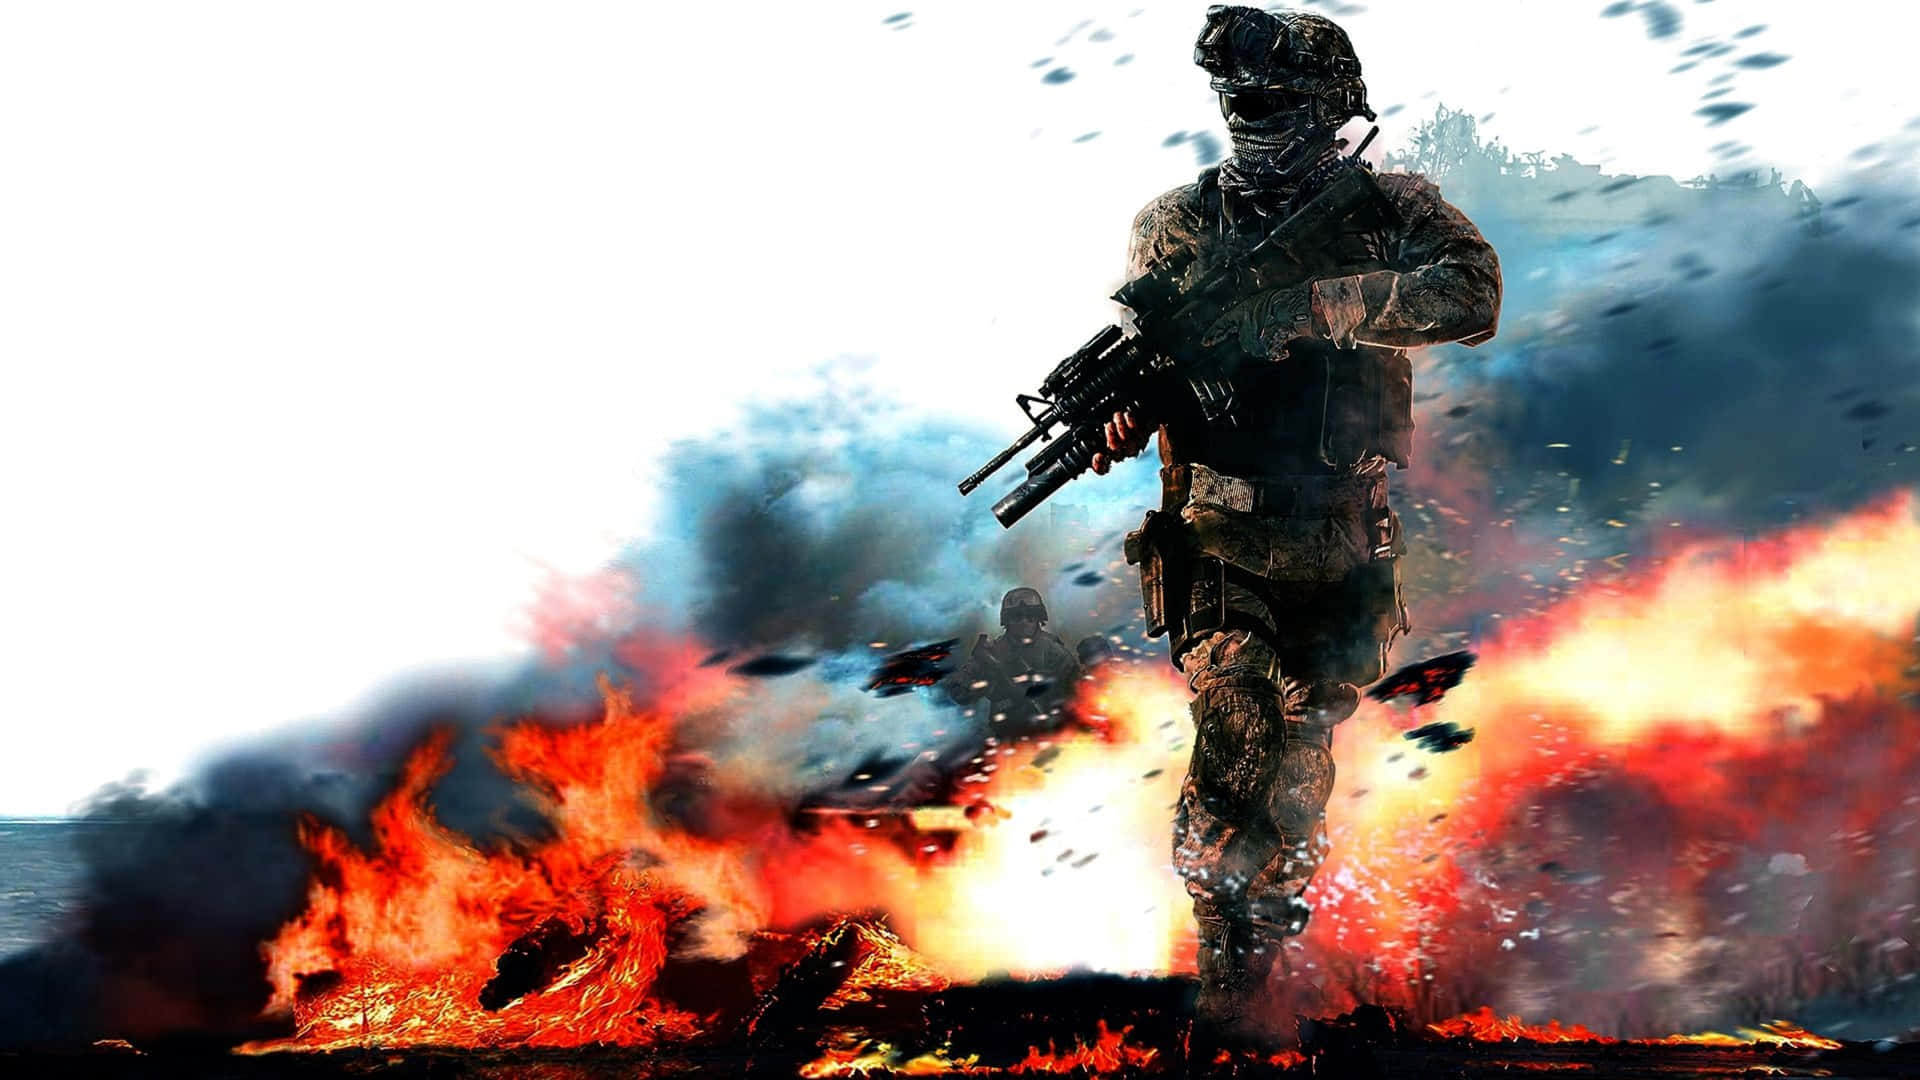 1440p Battlefield 1 Soldier Fire Background